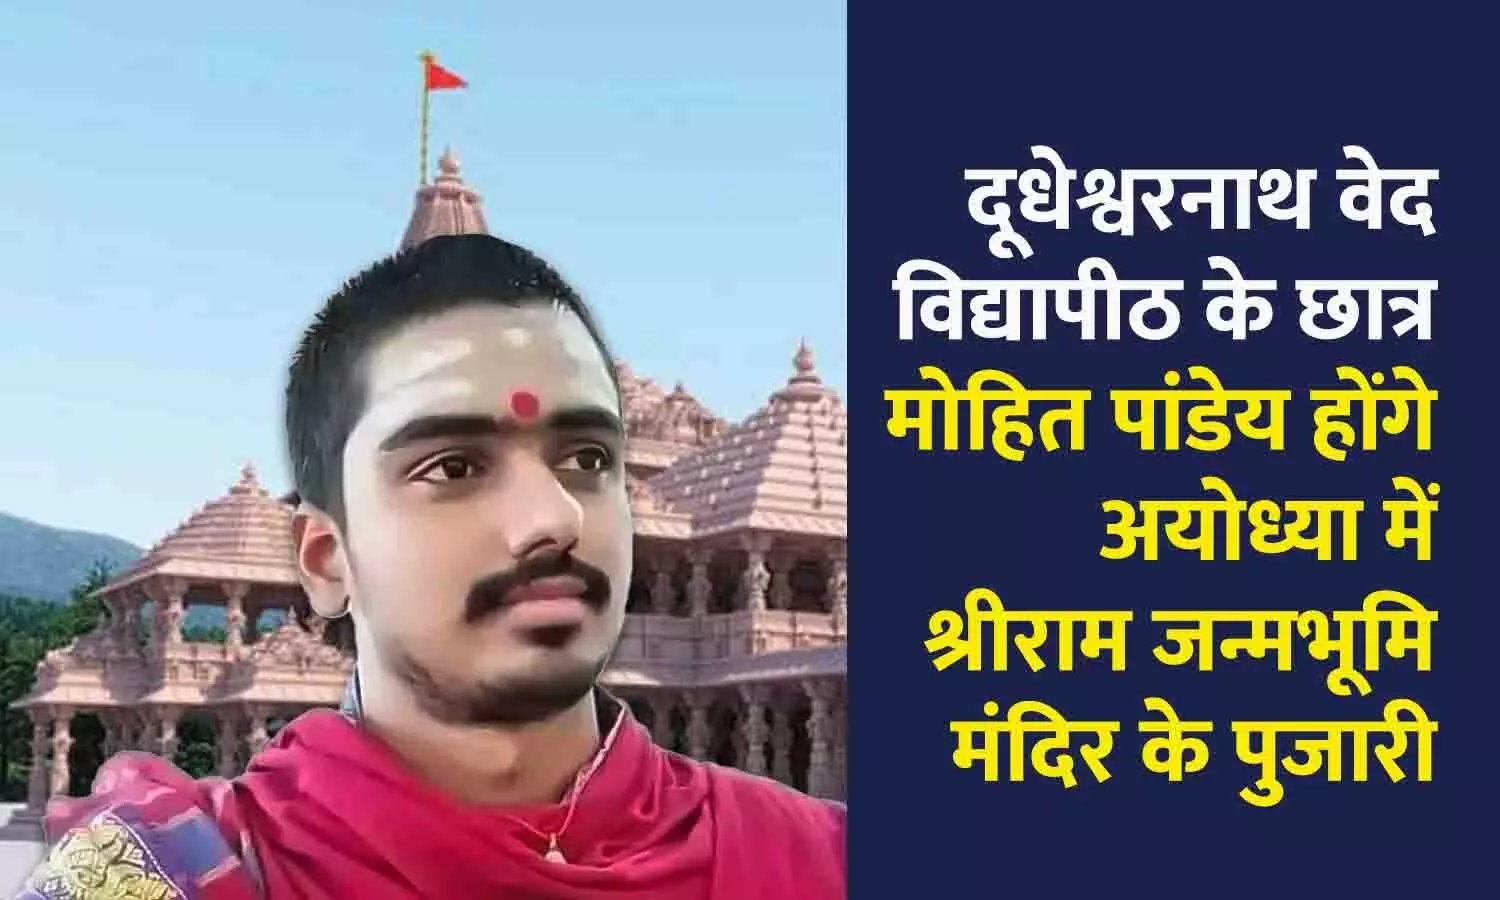 दूधेश्वरनाथ वेद विद्यापीठ के छात्र मोहित पांडेय होंगे अयोध्या में श्रीराम जन्मभूमि मंदिर के पुजारी, तिरुपति से की थी आचार्य की पढ़ाई